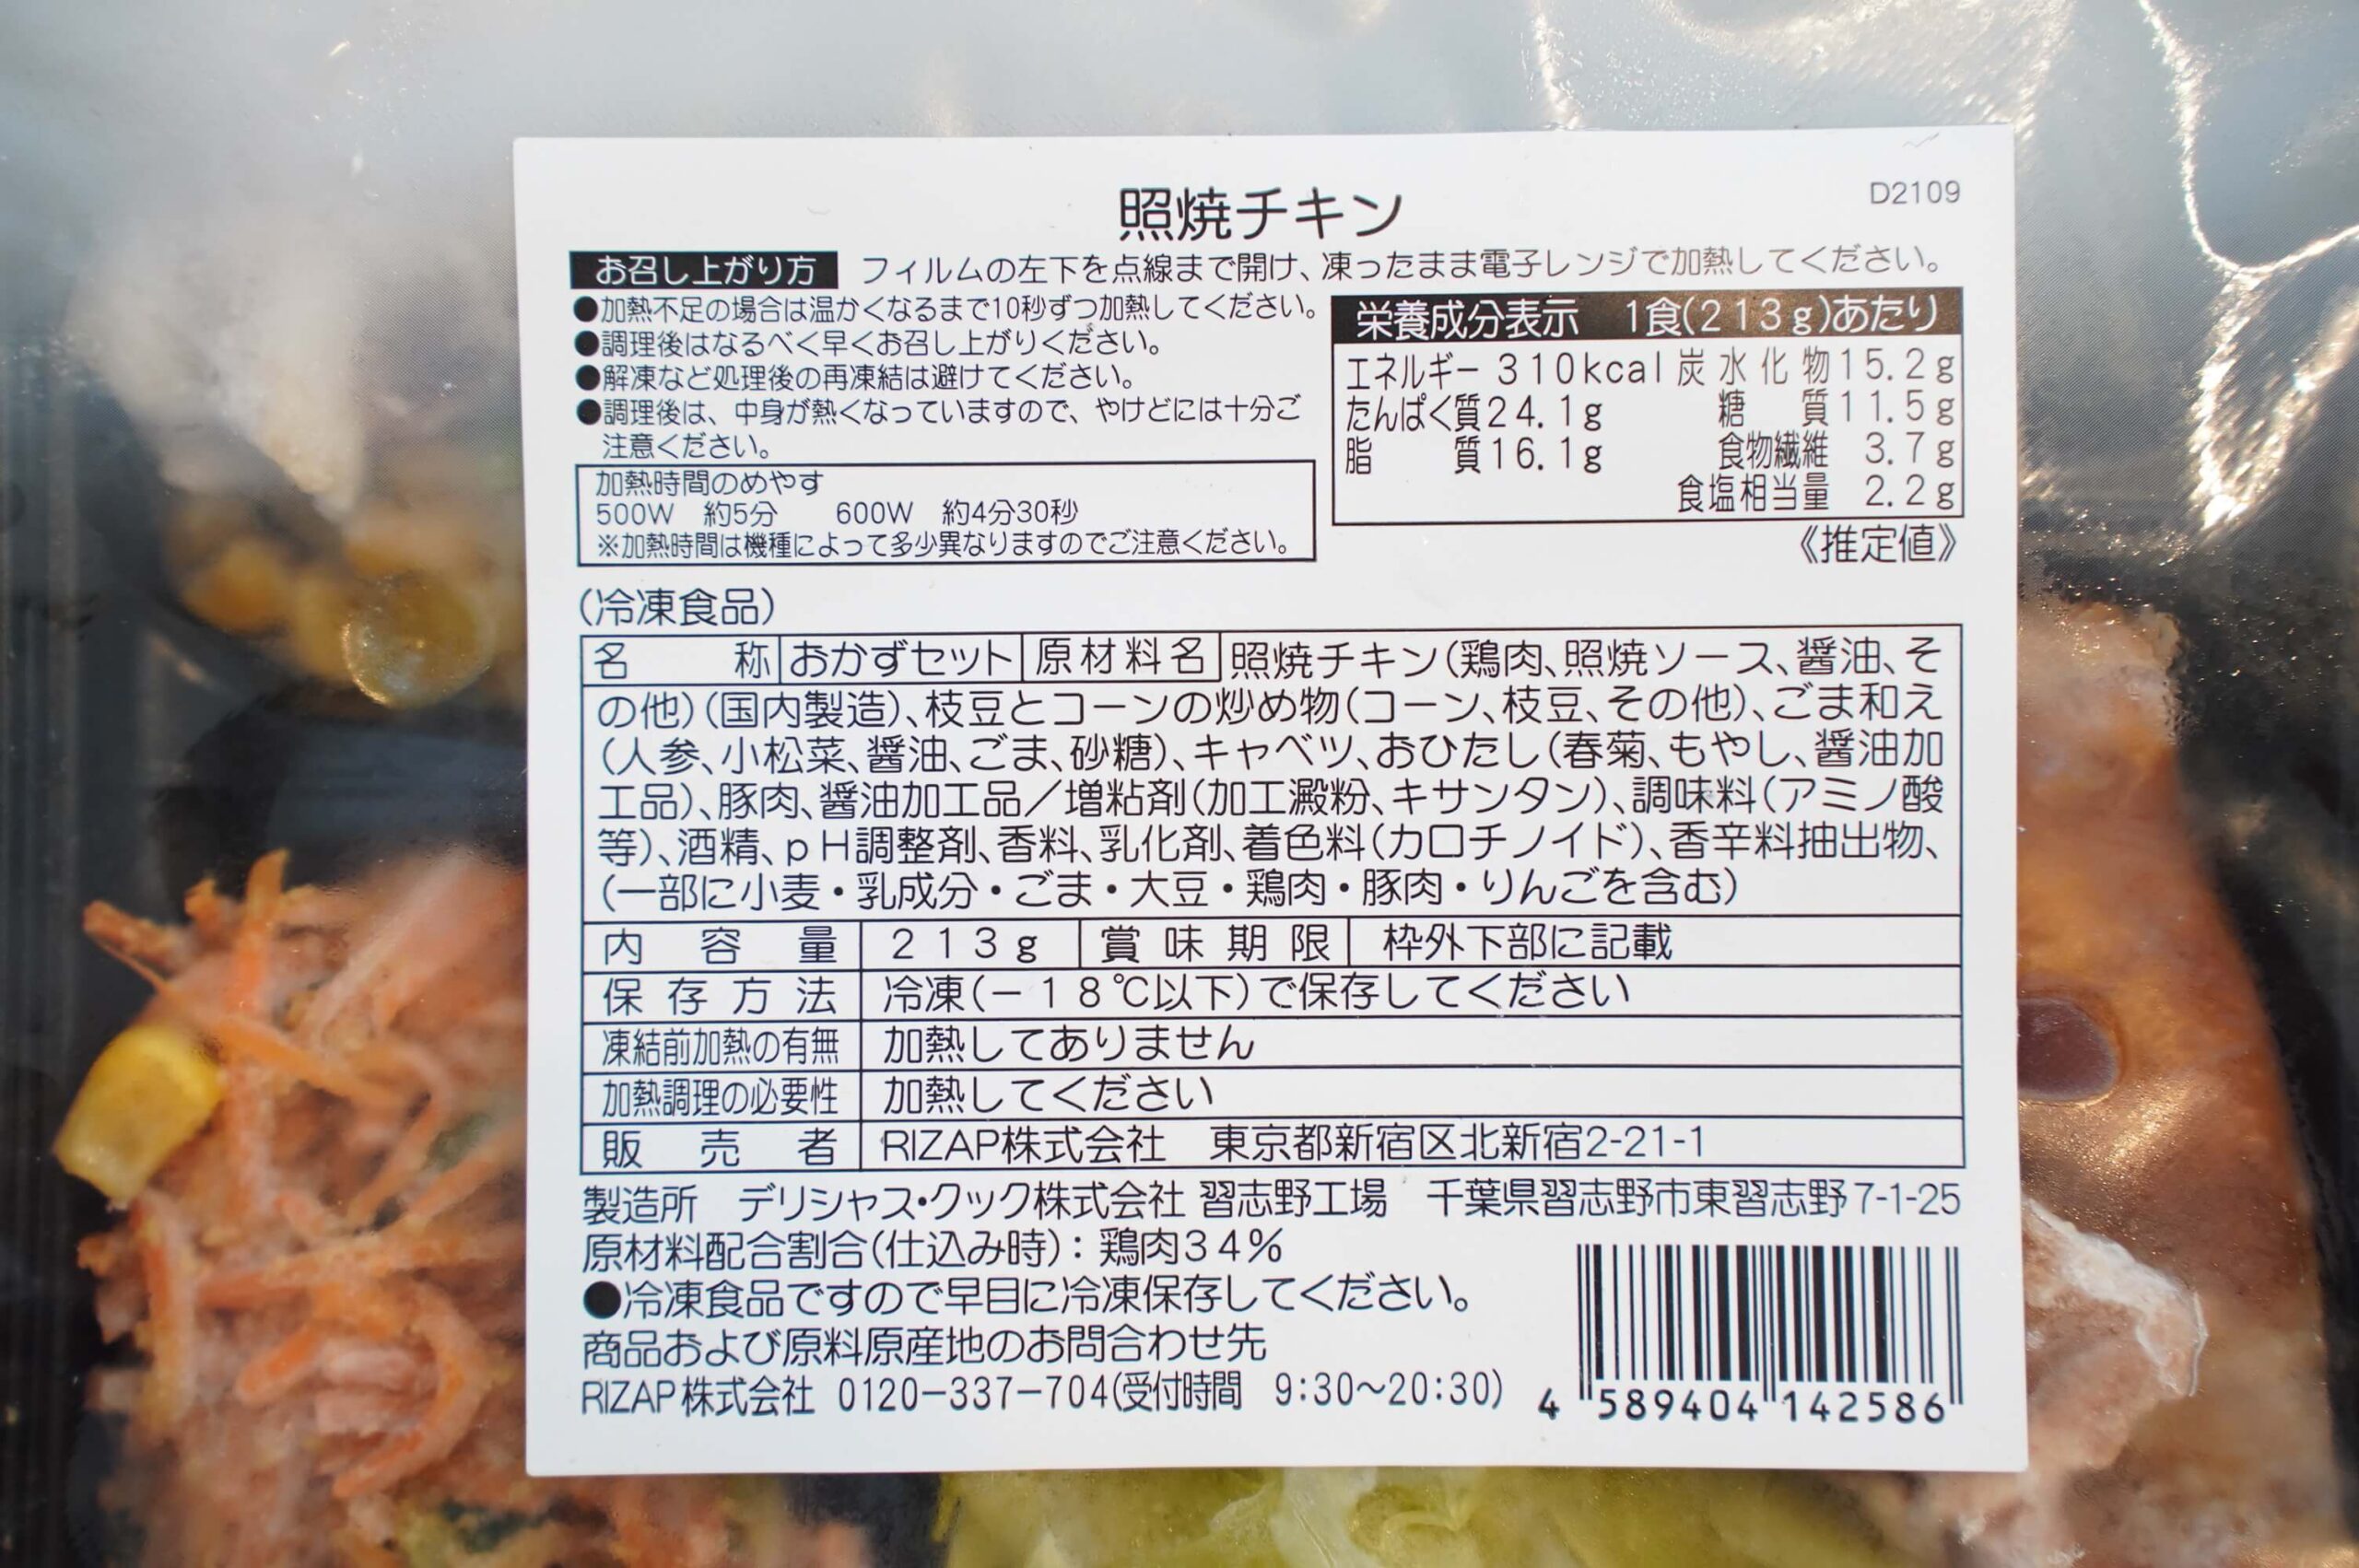 ライザップのサポートミール「照焼チキン」の栄養成分表の写真